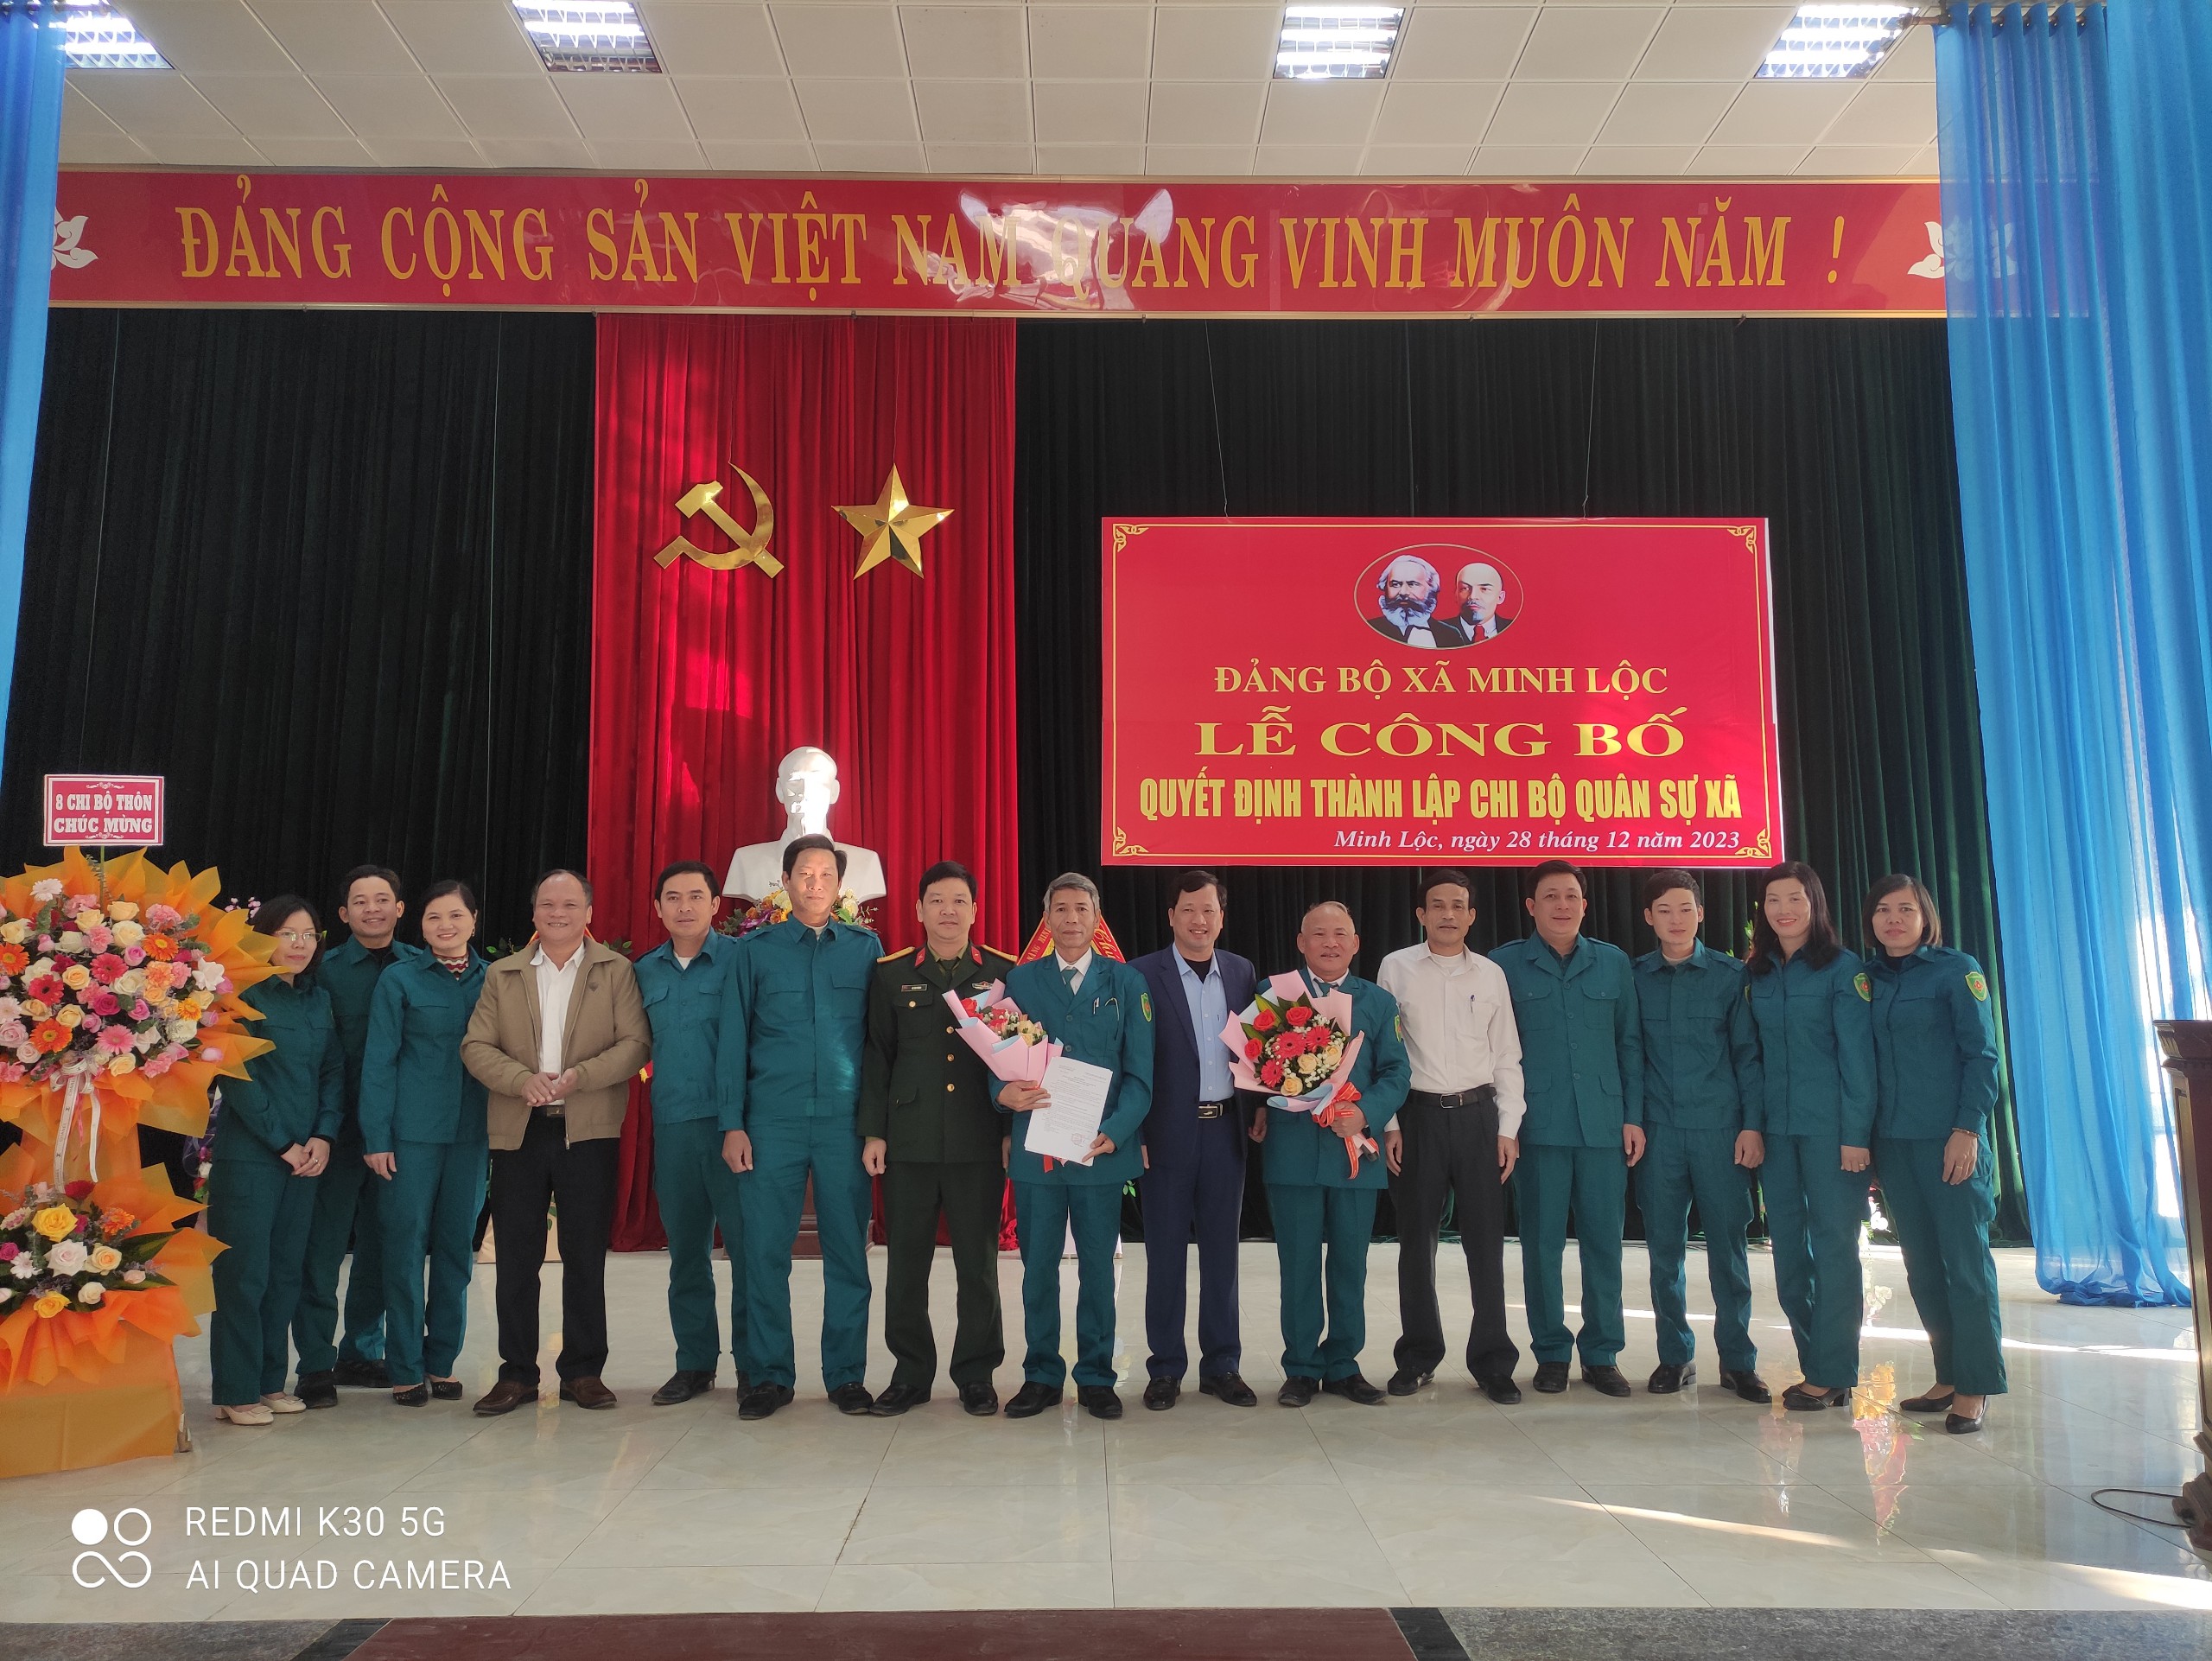 Đảng ủy  xã Minh Lộc tổ chức lễ Công bố quyết định thành lập Chi bộ quân sự xã Minh Lộc